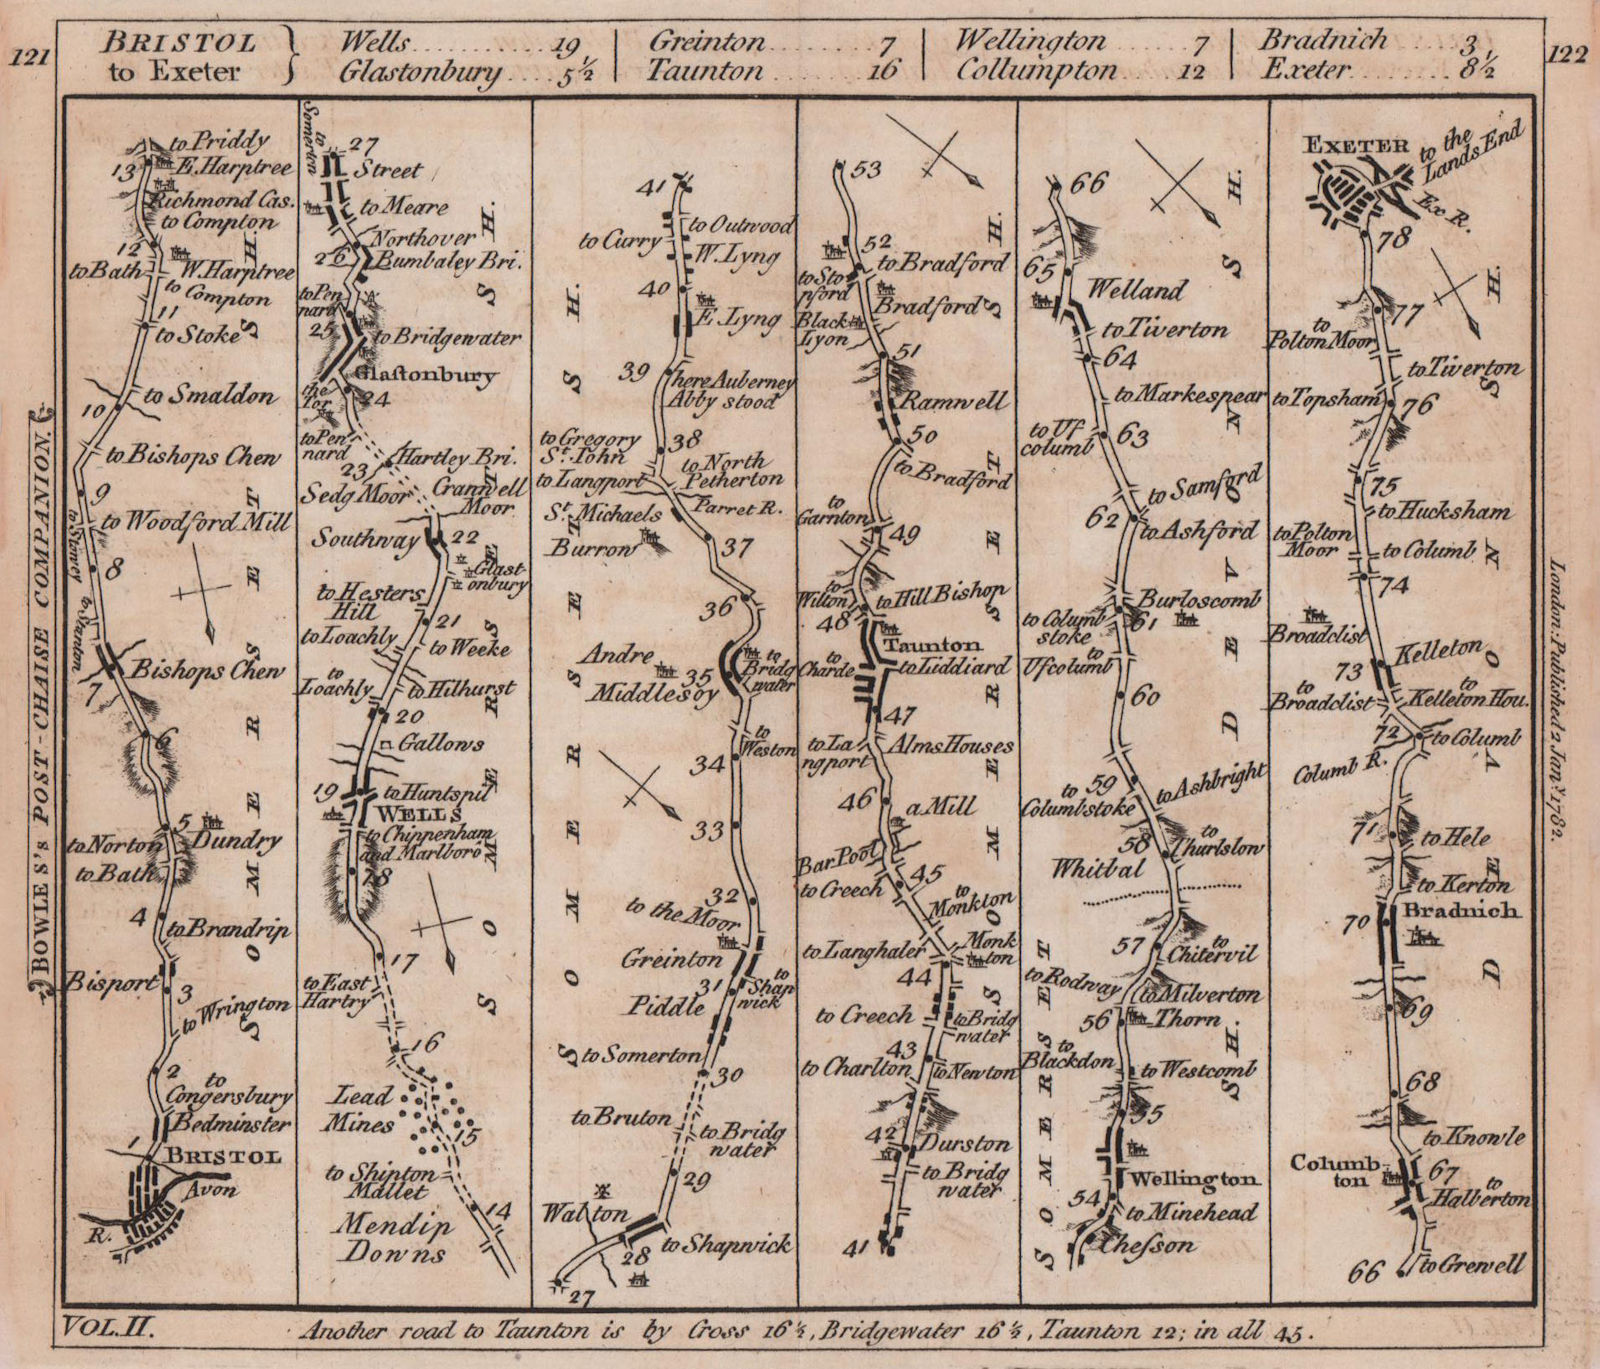 Bristol-Glastonbury-Taunton-Wellington-Exeter road strip map. BOWLES 1782